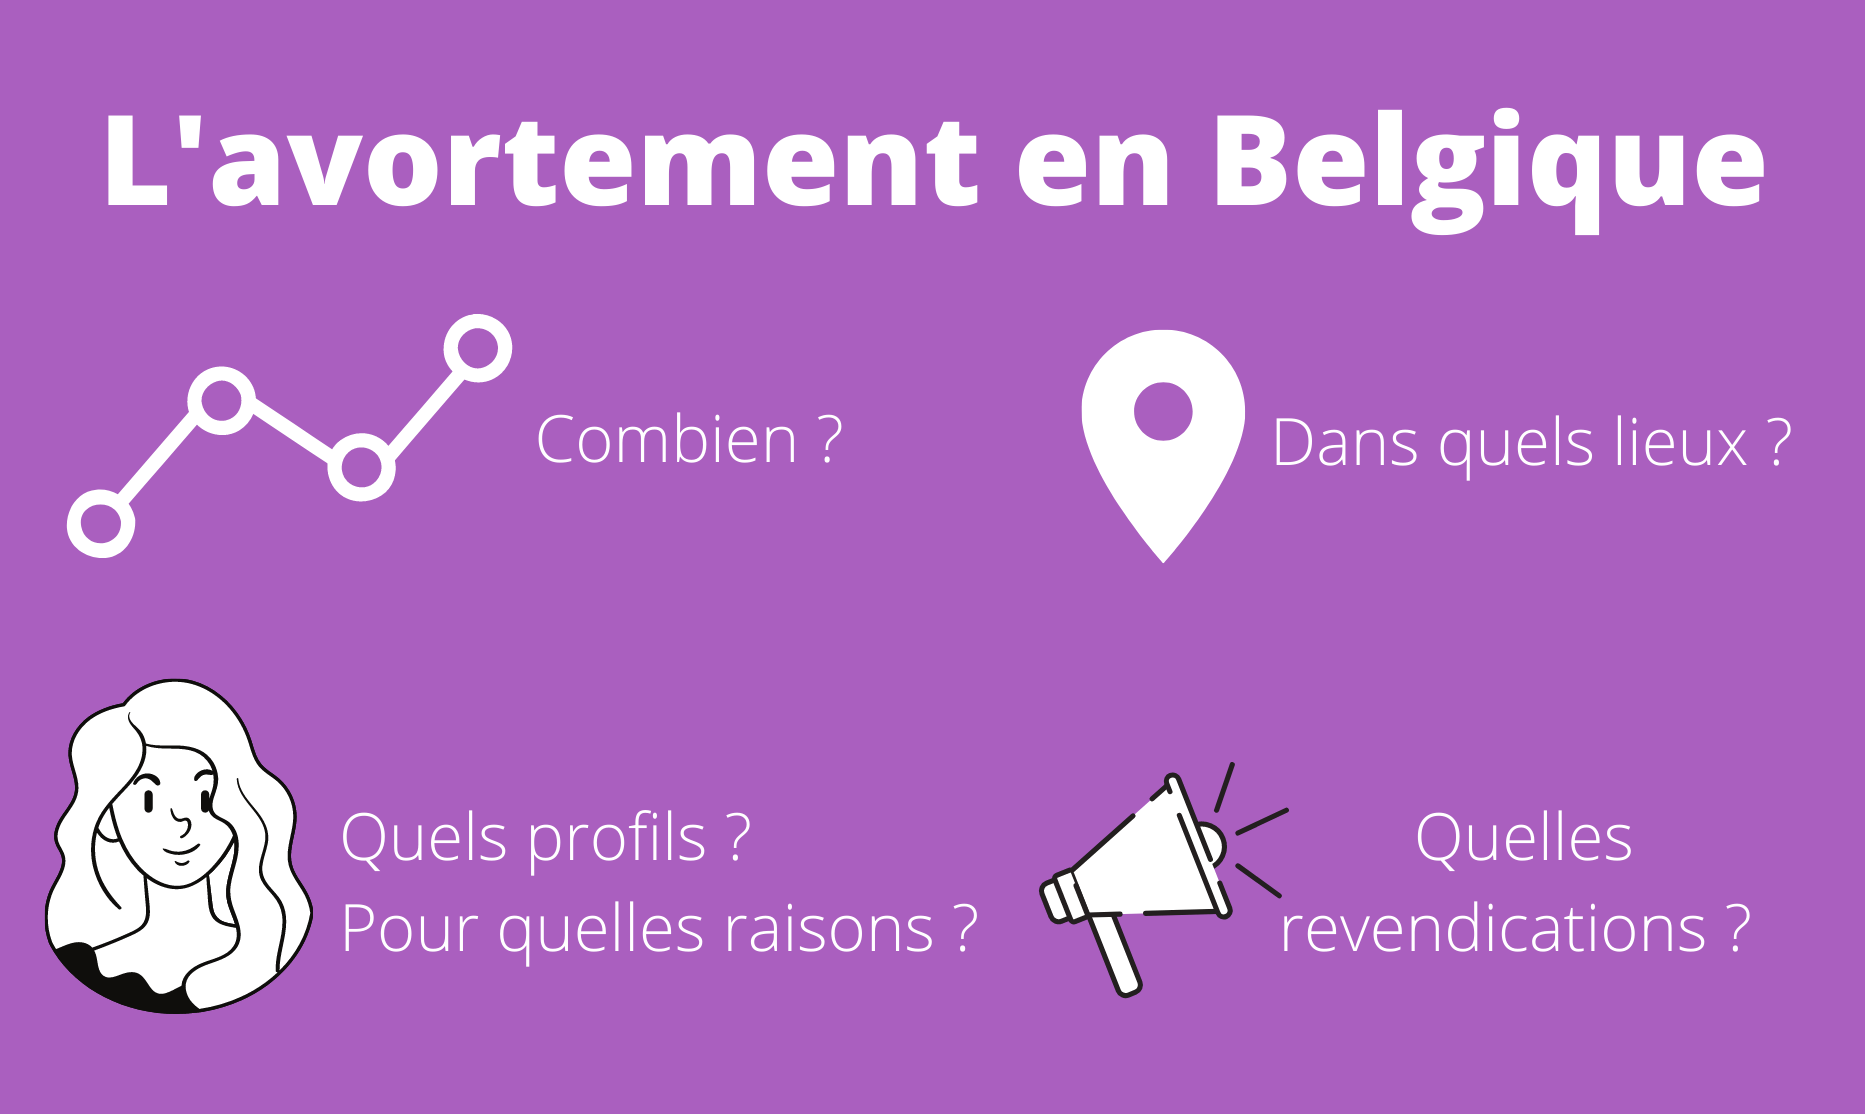 image illustrant larticle à propos des chiffres relatifs à lavortement en Belgique de 2012 à 2019